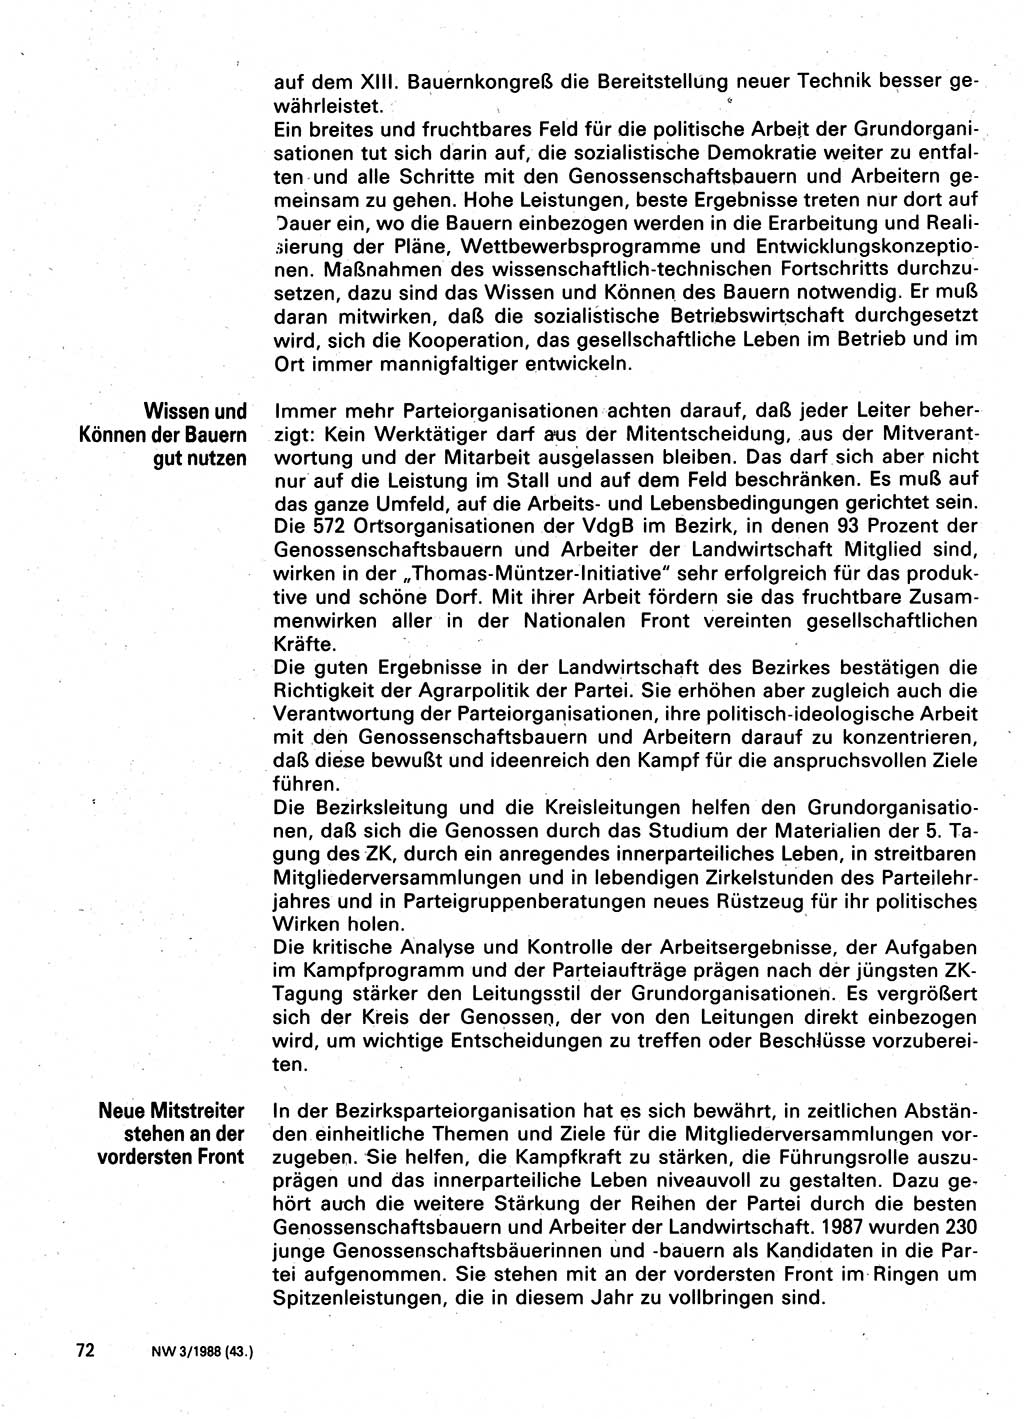 Neuer Weg (NW), Organ des Zentralkomitees (ZK) der SED (Sozialistische Einheitspartei Deutschlands) für Fragen des Parteilebens, 43. Jahrgang [Deutsche Demokratische Republik (DDR)] 1988, Seite 72 (NW ZK SED DDR 1988, S. 72)